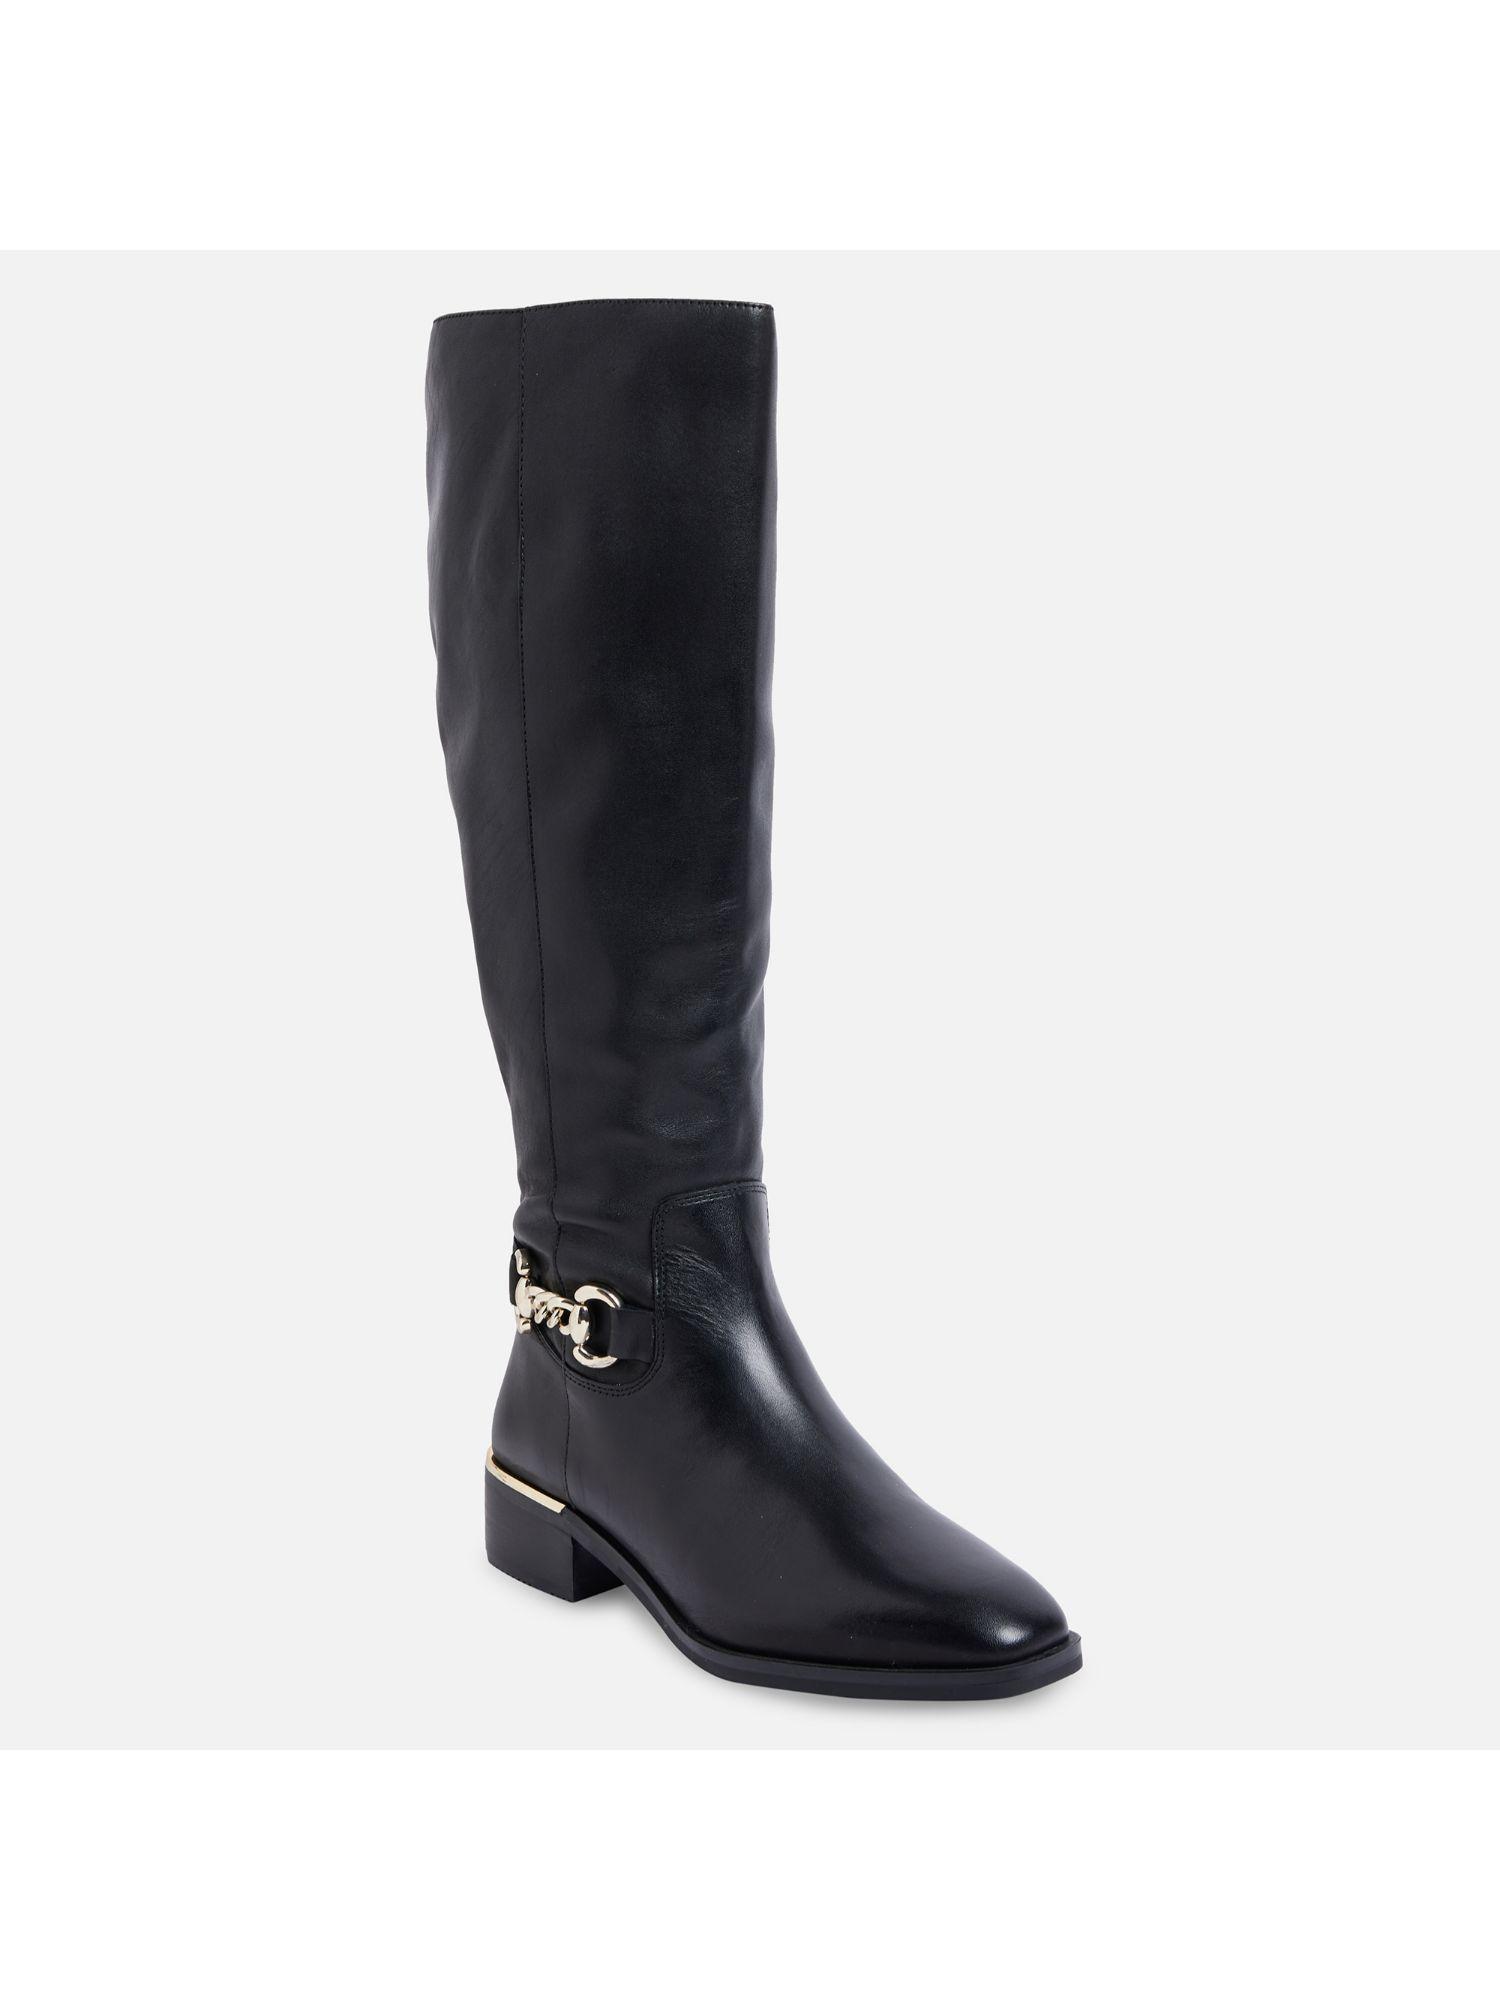 fraenna-leather-black-solid-knee-length-boots